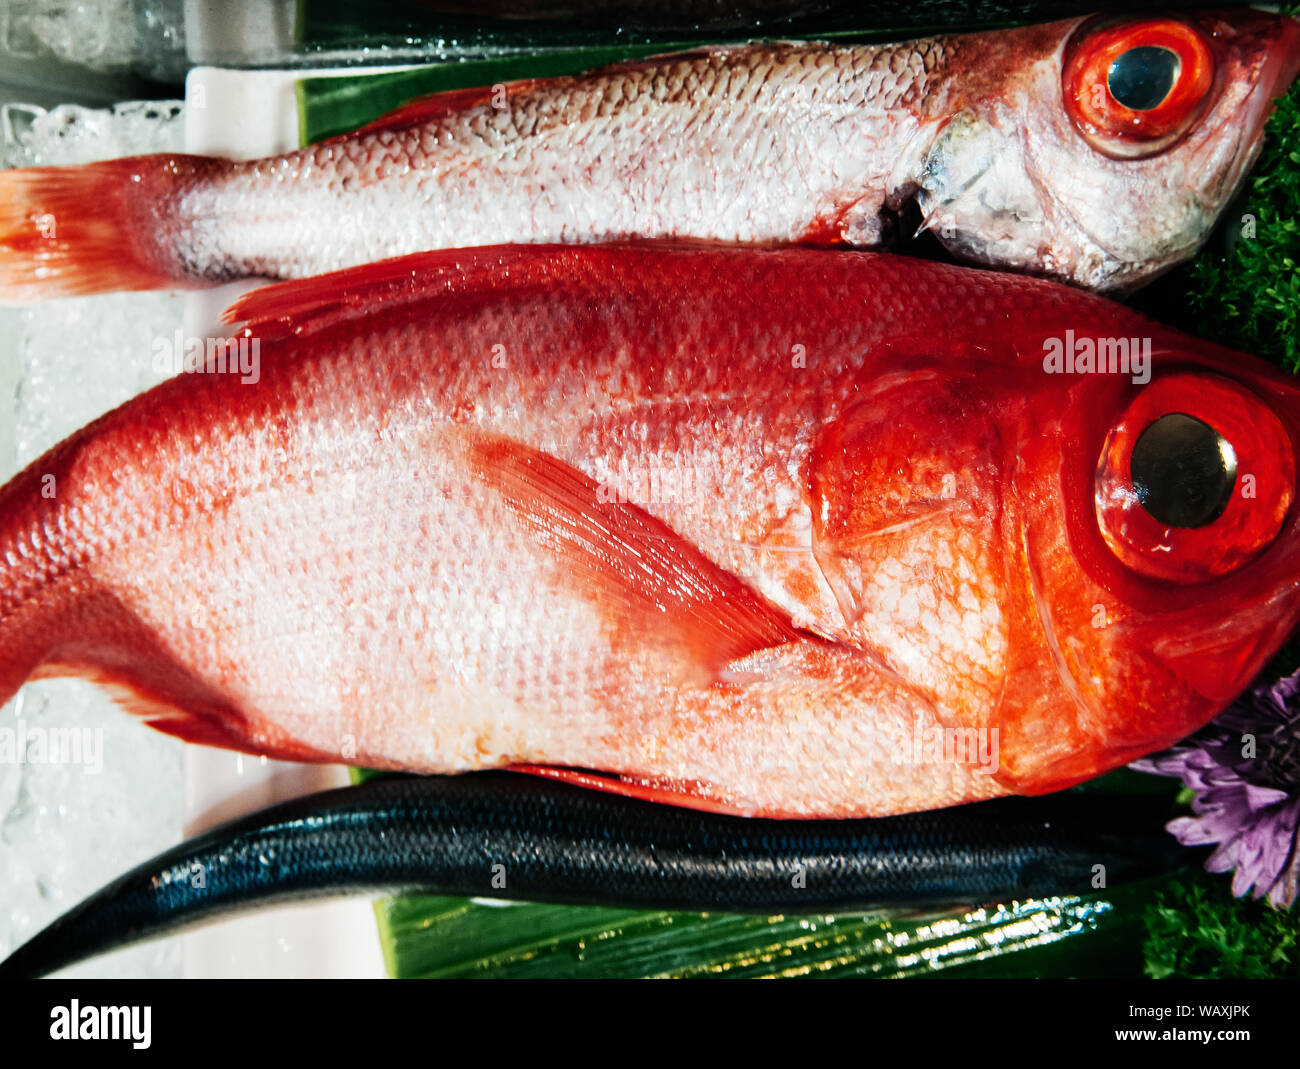 Große Augen Kinmedai oder Rot Beryx Alfonsino oder frischen Fisch für japanische Sushi Sashimi auf Eis Stockfoto